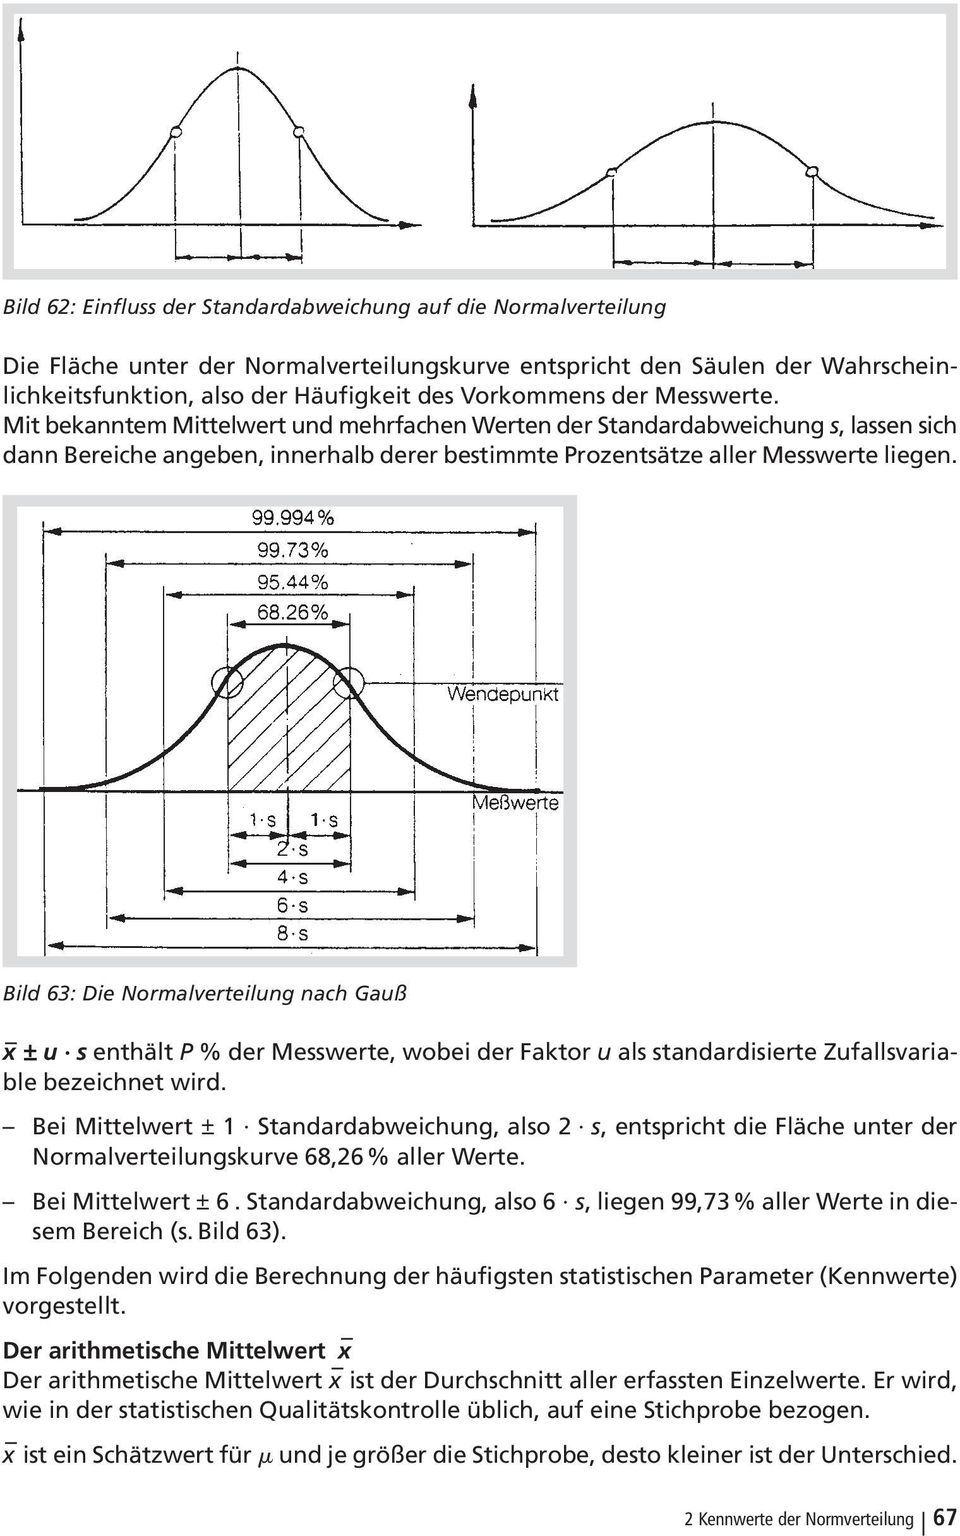 Bild 63: Die Normalverteilung nach Gauß x ( u s enthält P % der Messwerte, wobei der Faktor u als standardisierte Zufallsvariable bezeichnet wird.